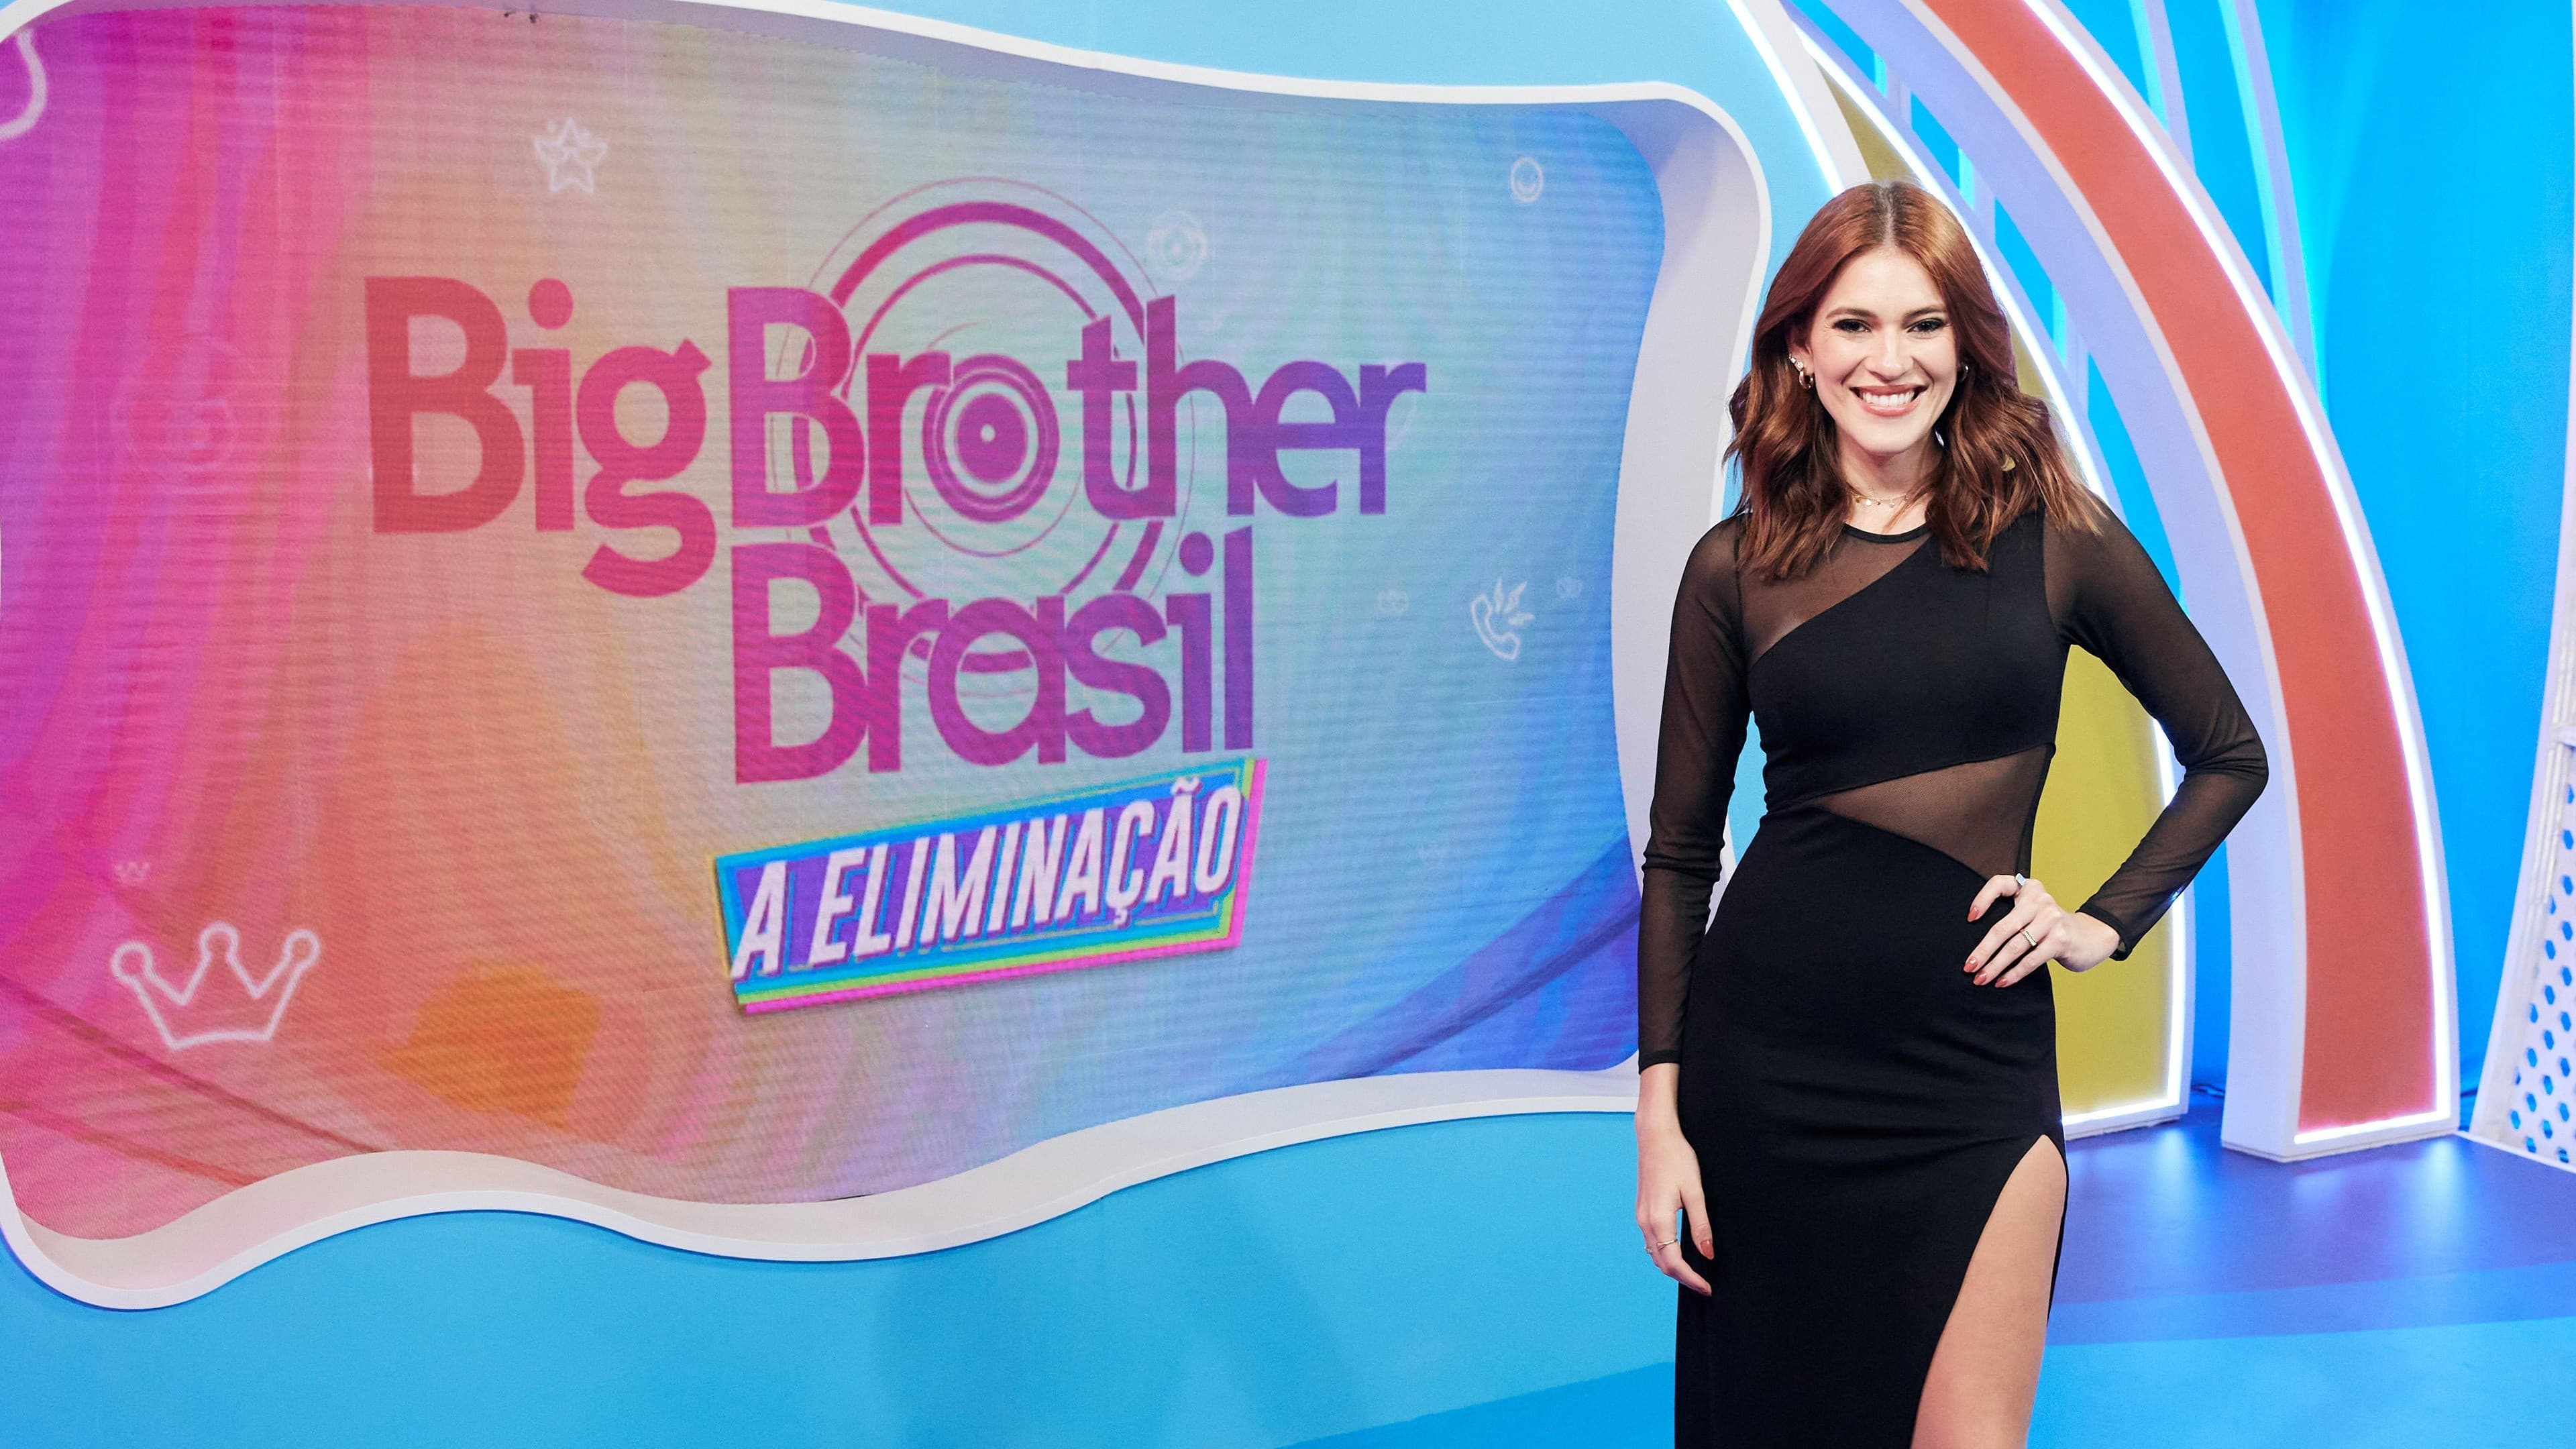 Big Brother Brasil: A Eliminação - serie